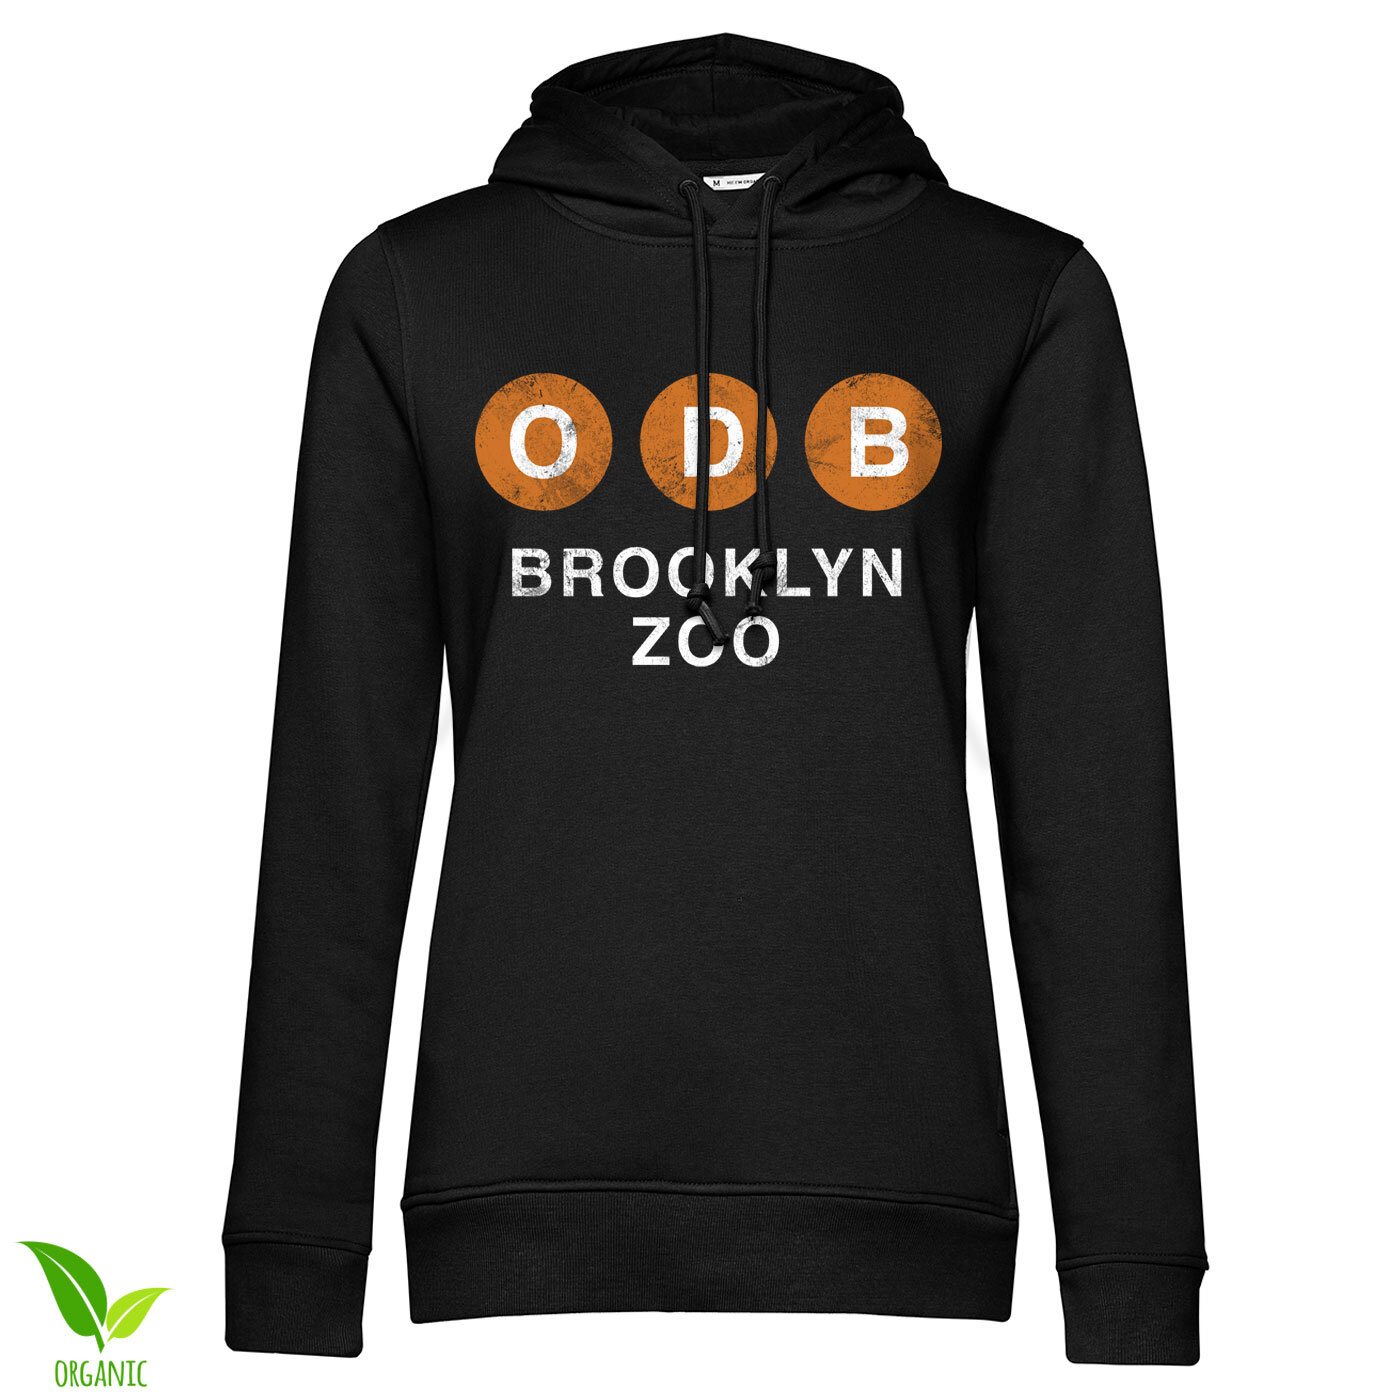 ODB Brooklyn Zoo Girls Hoodie